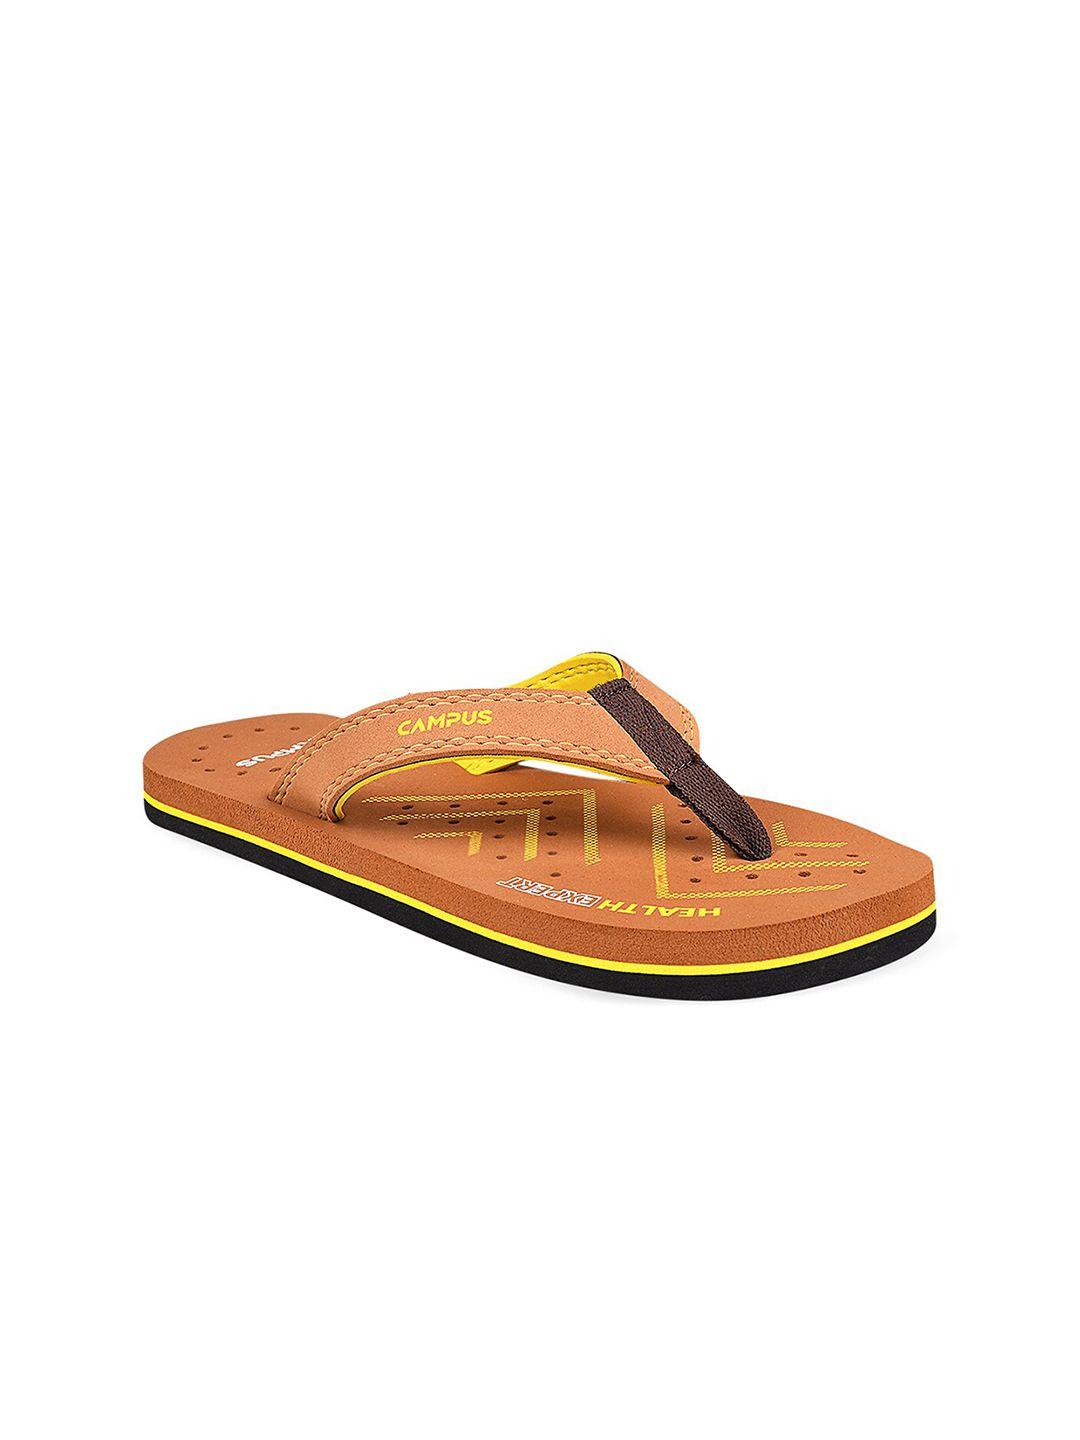 campus women tan & yellow printed thong flip-flops